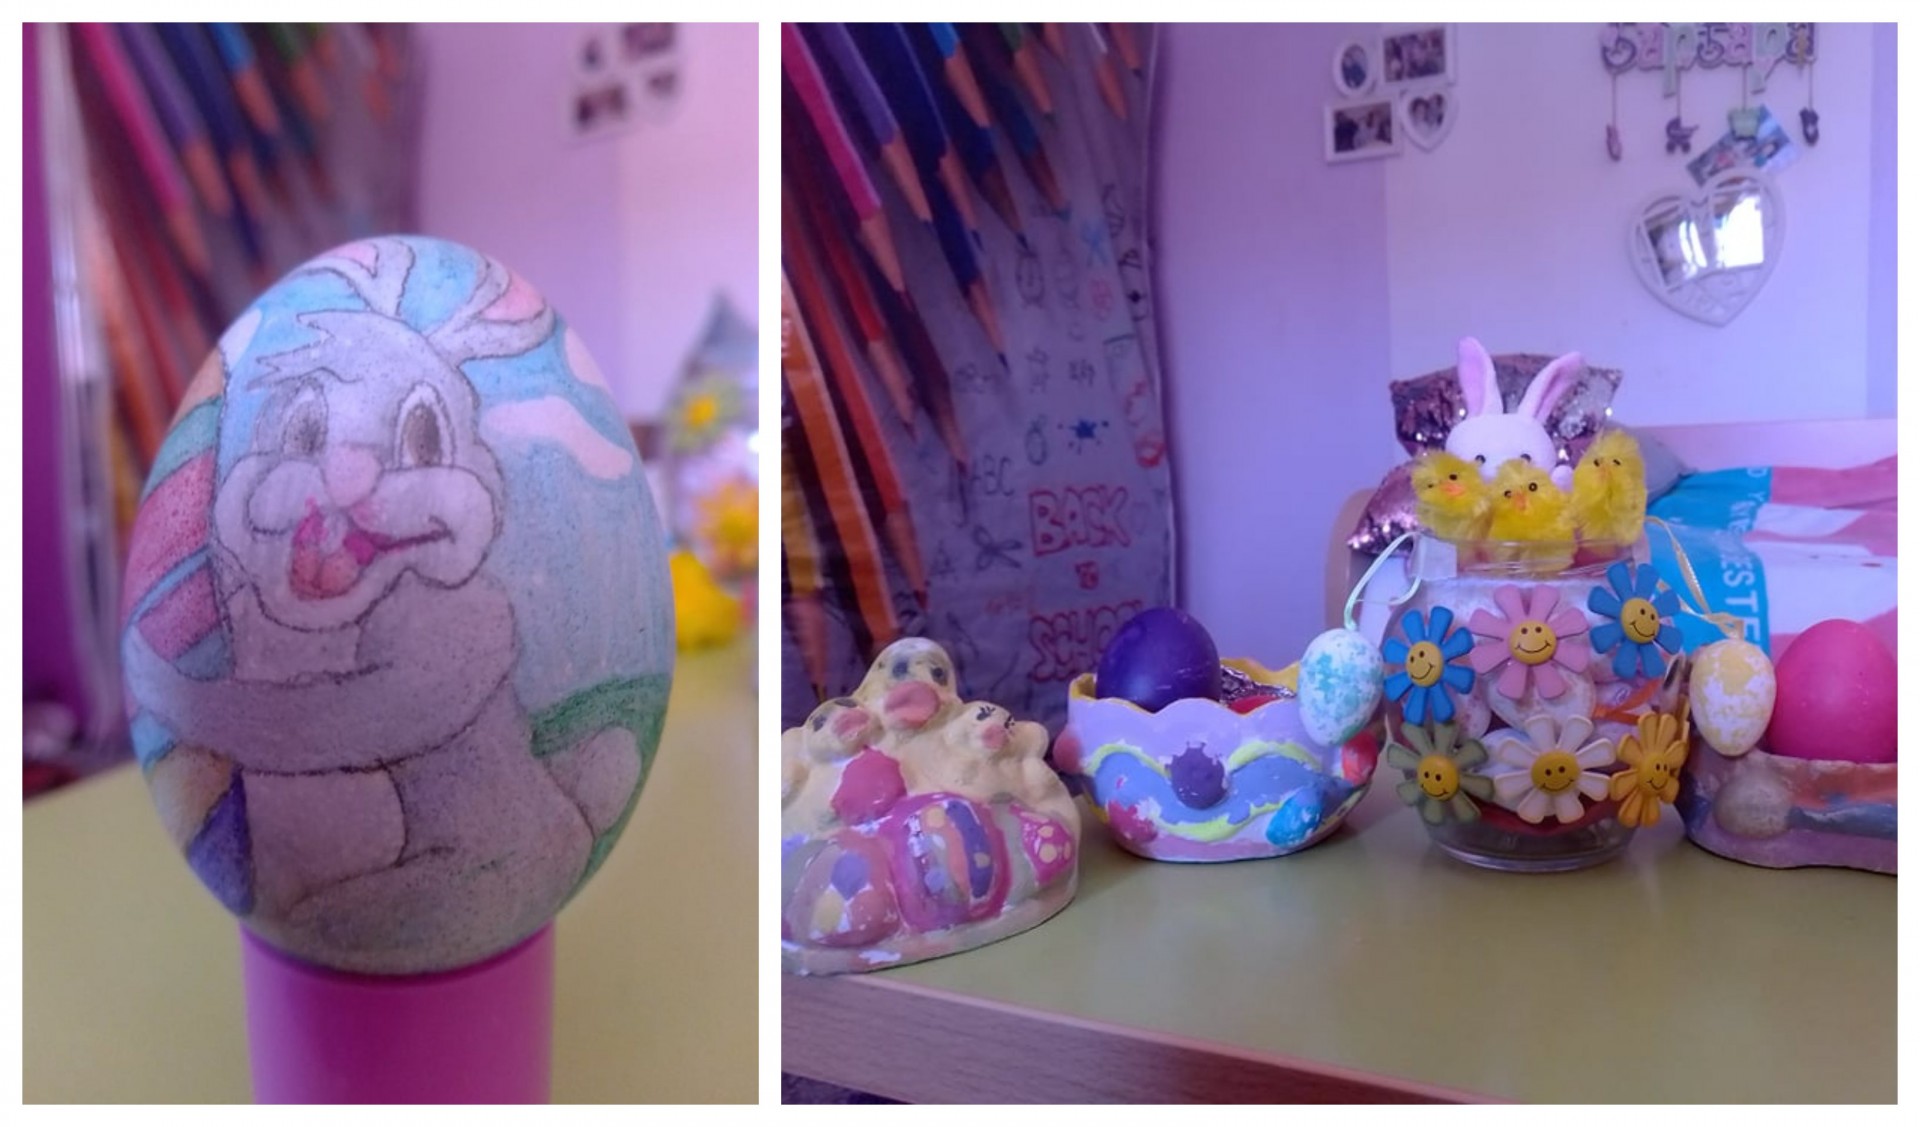 Петтоодделенката Барбара од Прилеп во домашната изолација изработува преубави Велигденски декорации